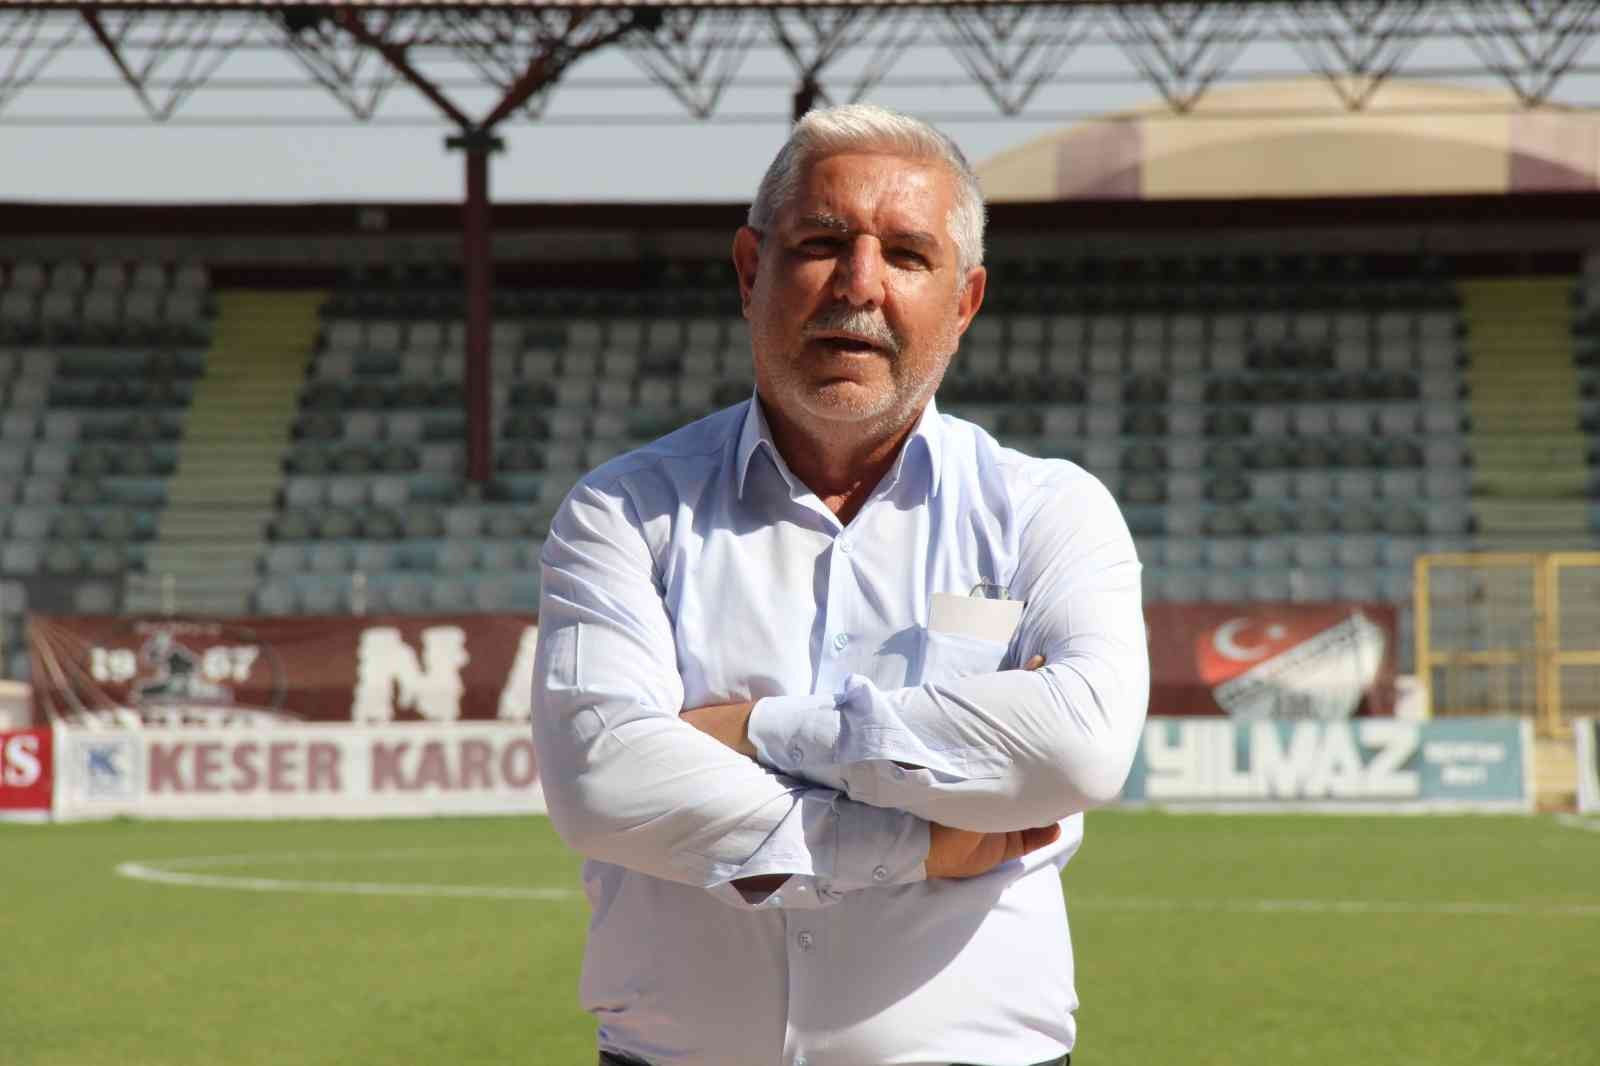 Elazığ’da futbol saha komiseri alımı yapılacak #elazig